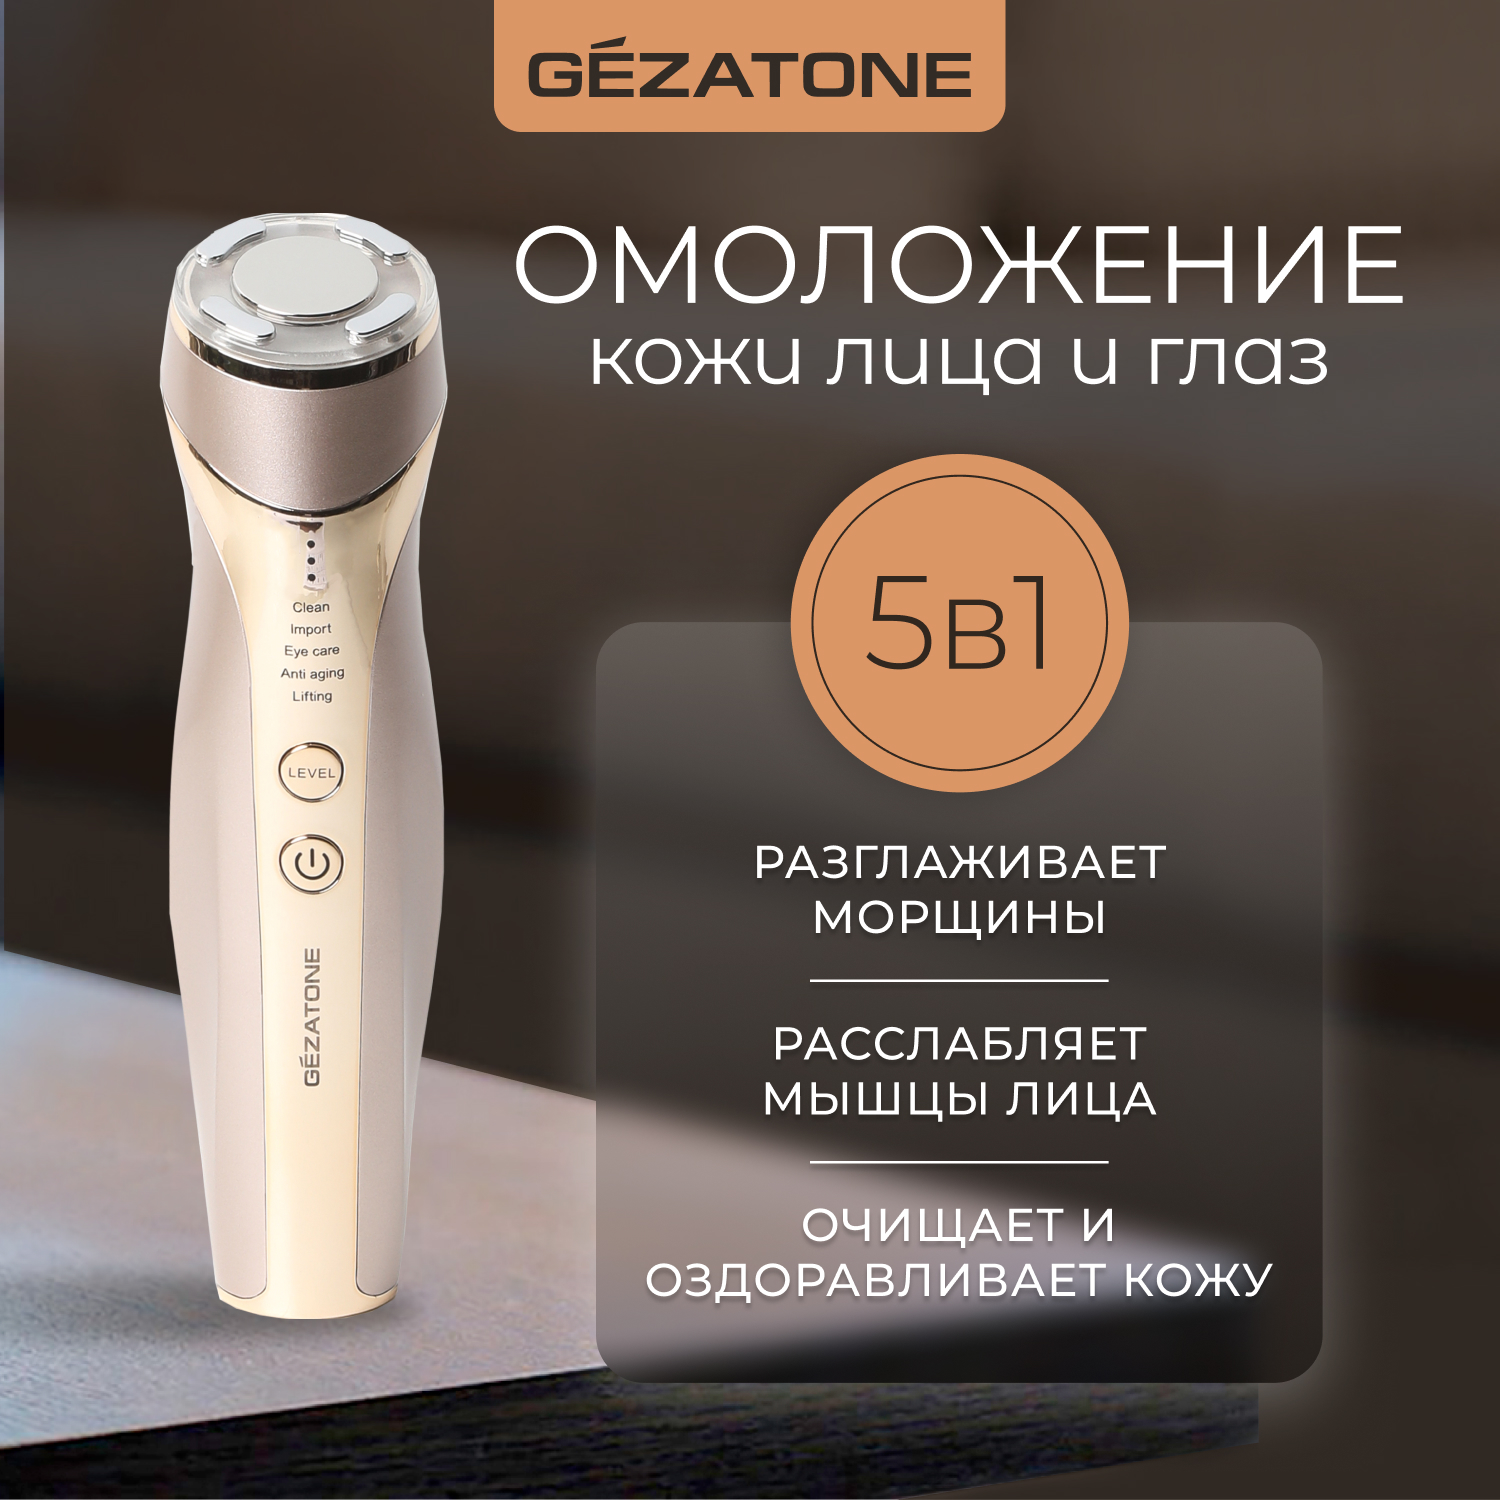 Ультразвуковой массажер GEZATONE m357 для омоложения кожи лица с 5 функциями gezatone biolift4 m100 s массажер для лица с 3 функциями